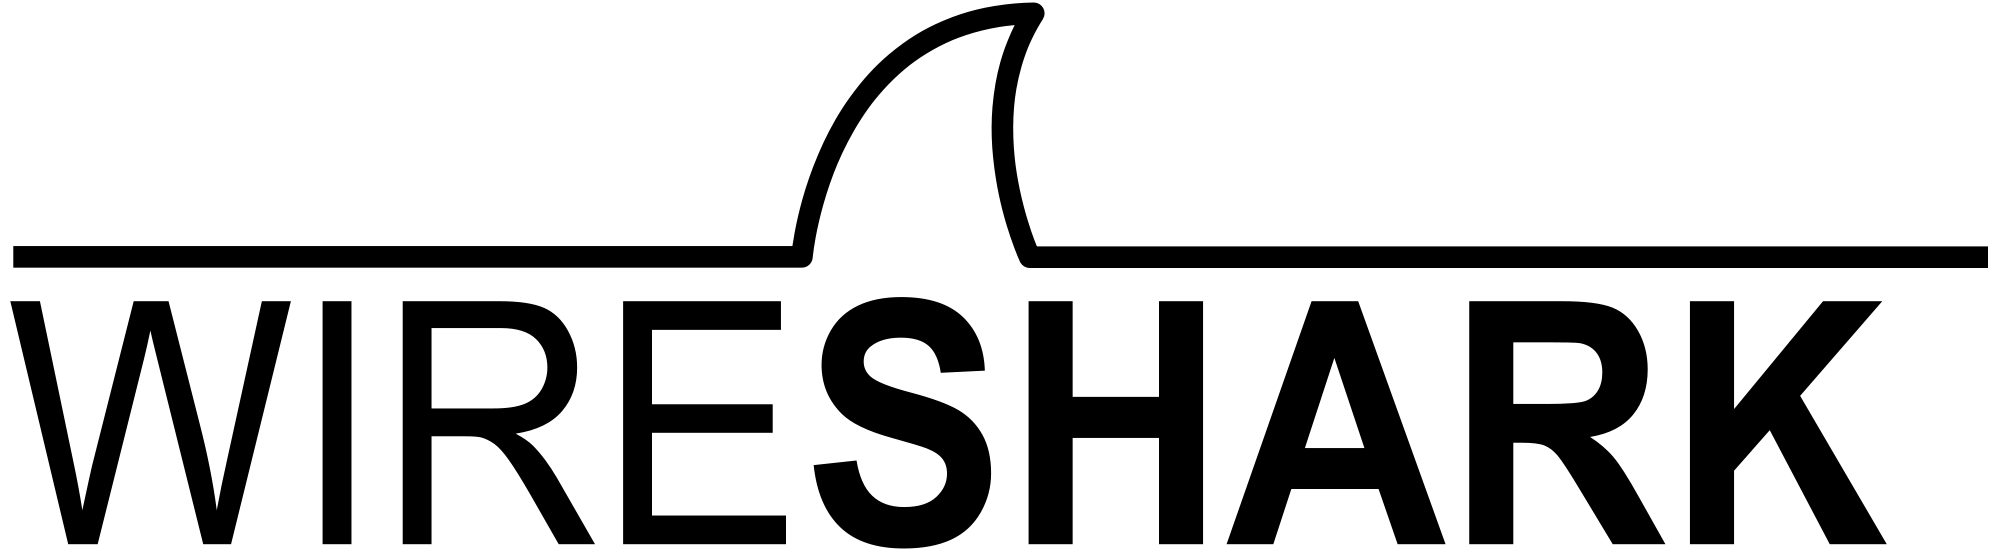 Wireshark logo. Source: wikimedia.org